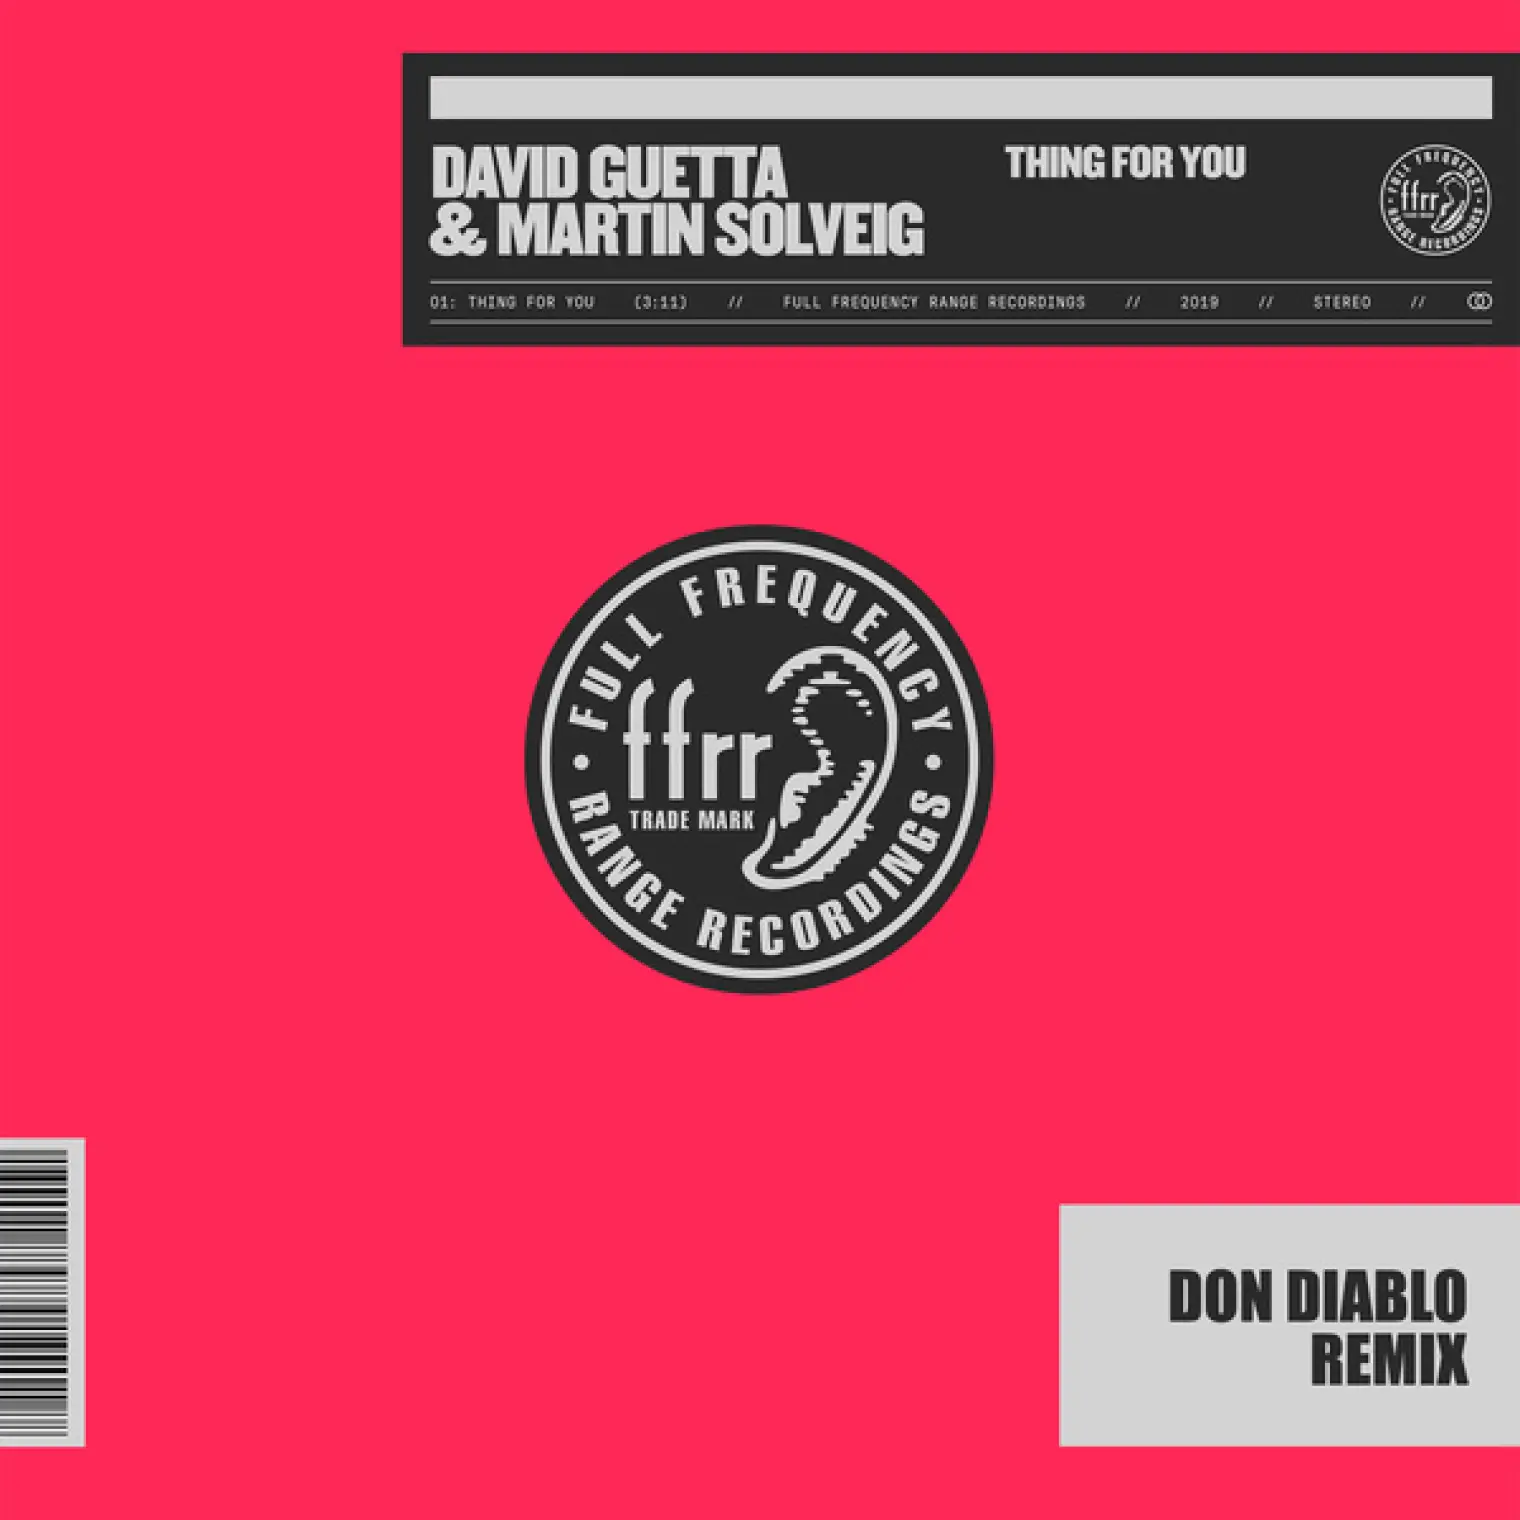 Thing For You (Don Diablo Remix) -  David Guetta 